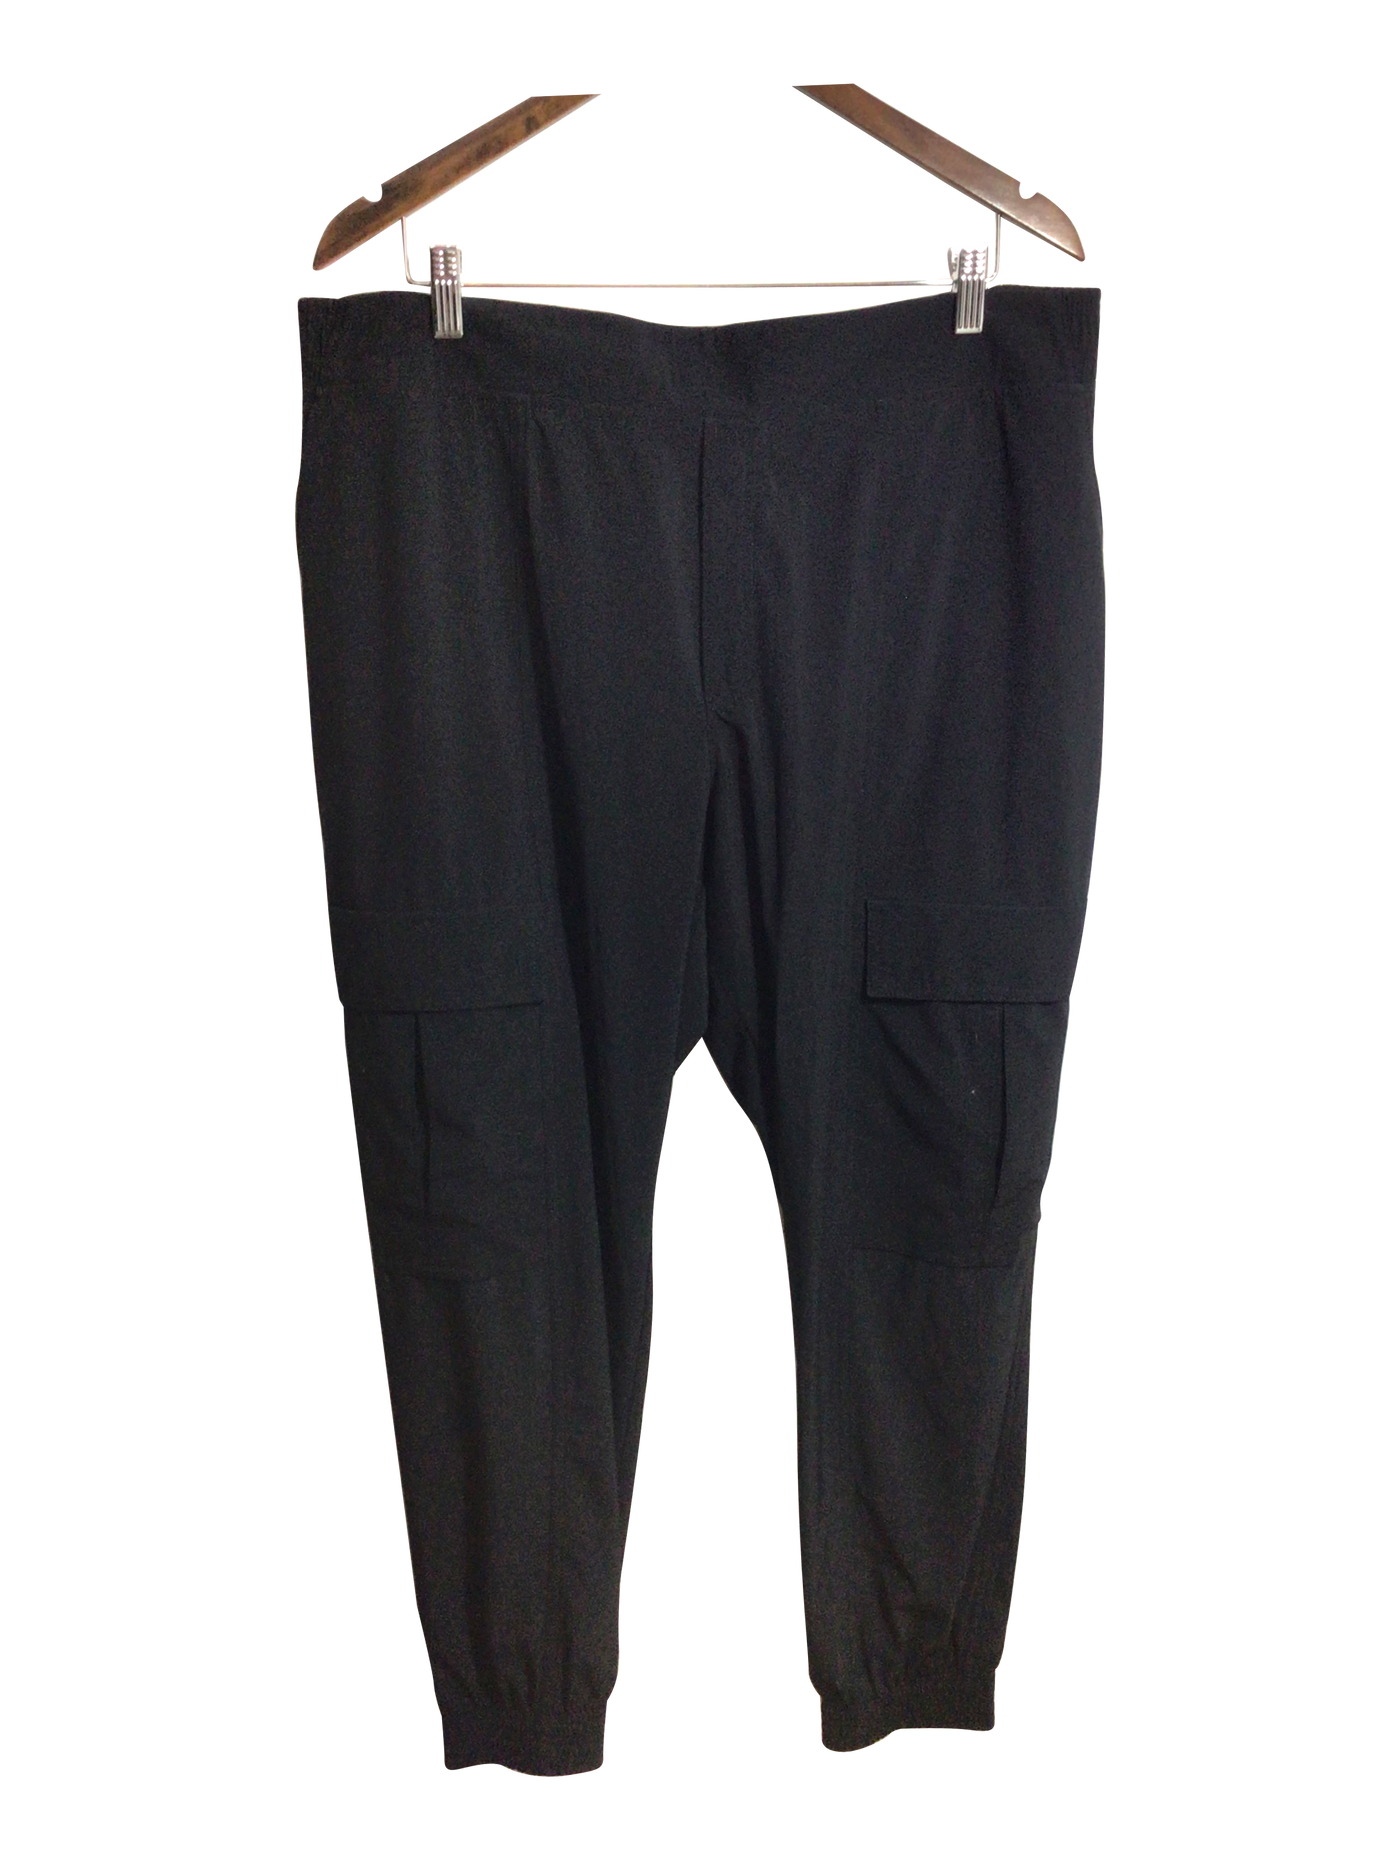 RBX Black Active Pants Size L - 67% off